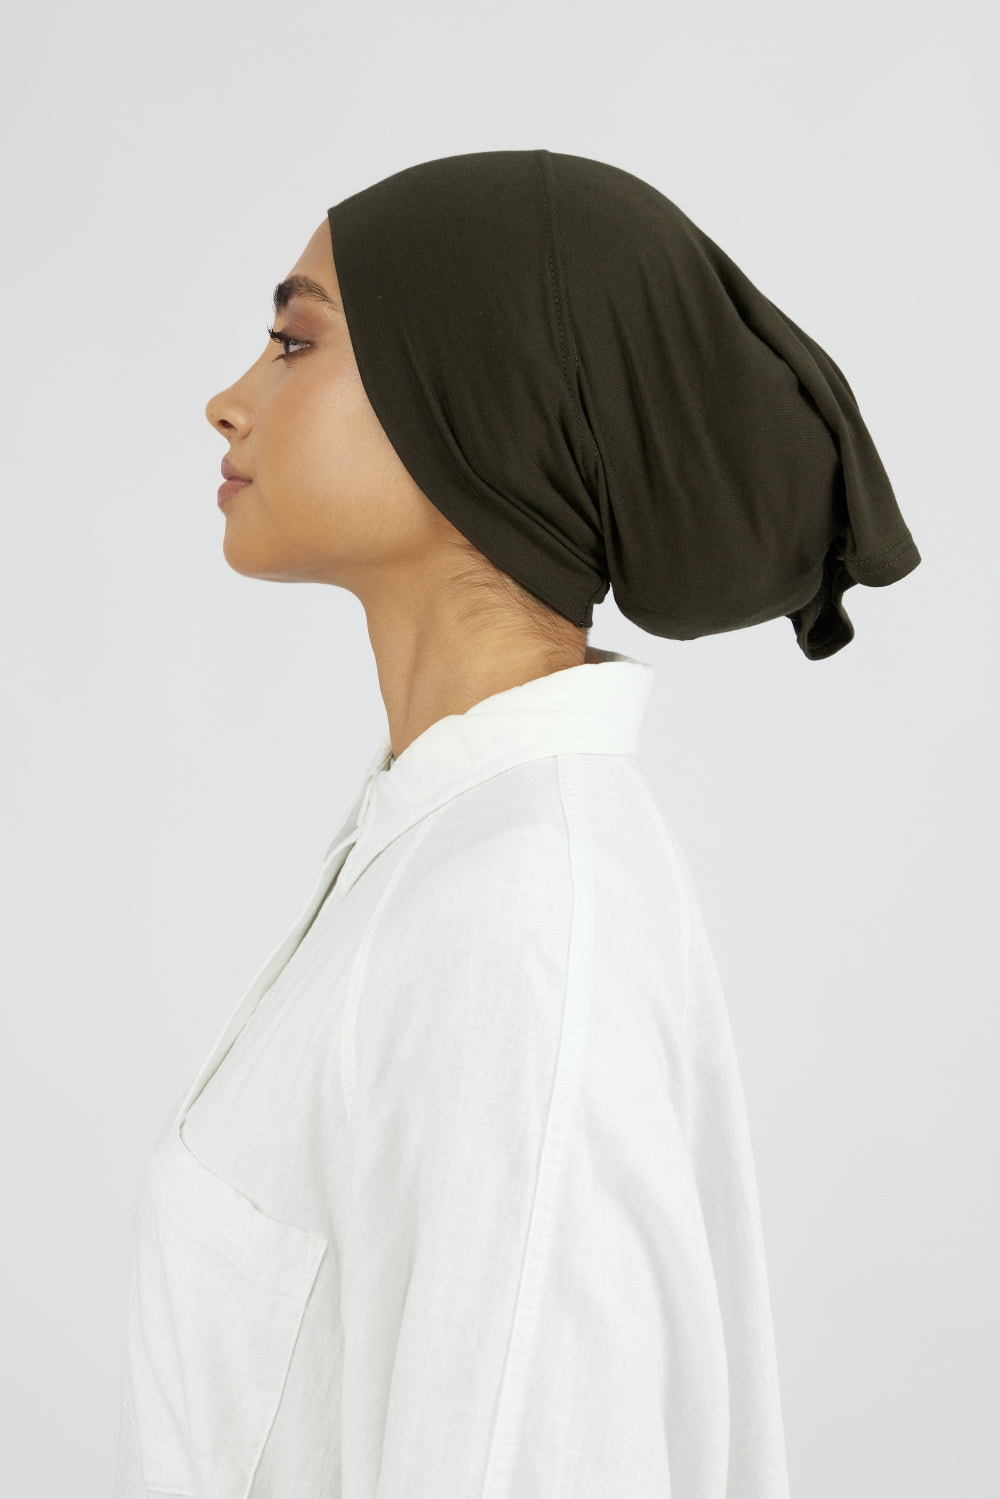 AE - Matching Chiffon Hijab Set - Rosemary